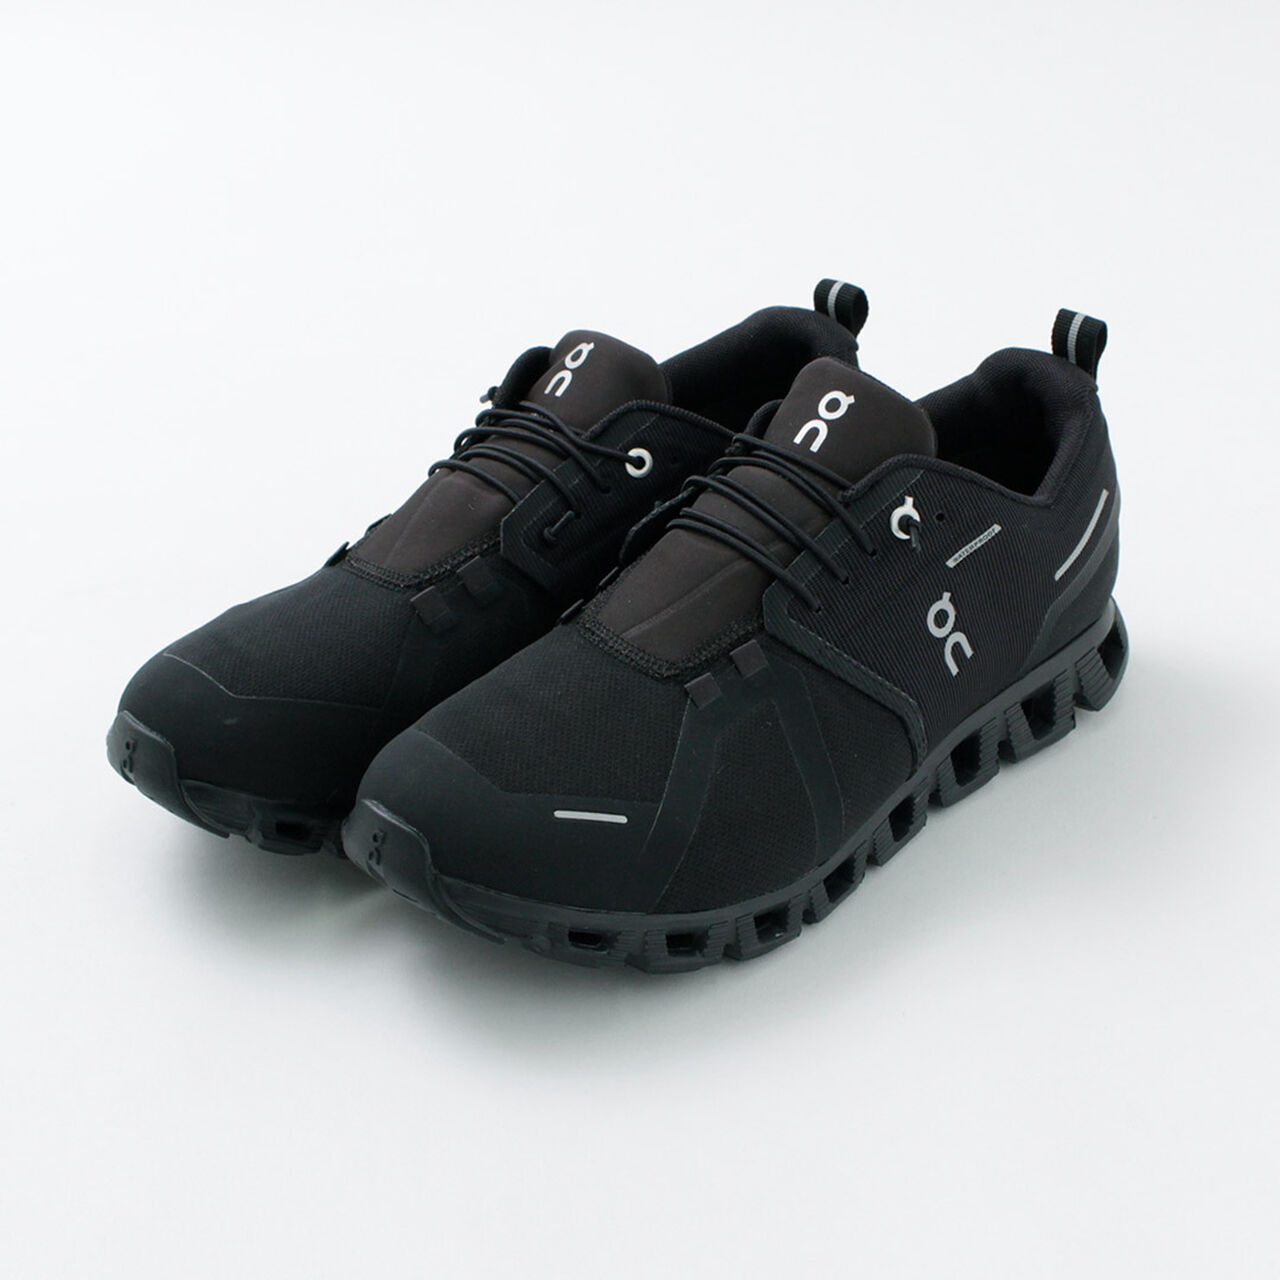 Cloud 5 Waterproof Sneakers,AllBlack, large image number 0